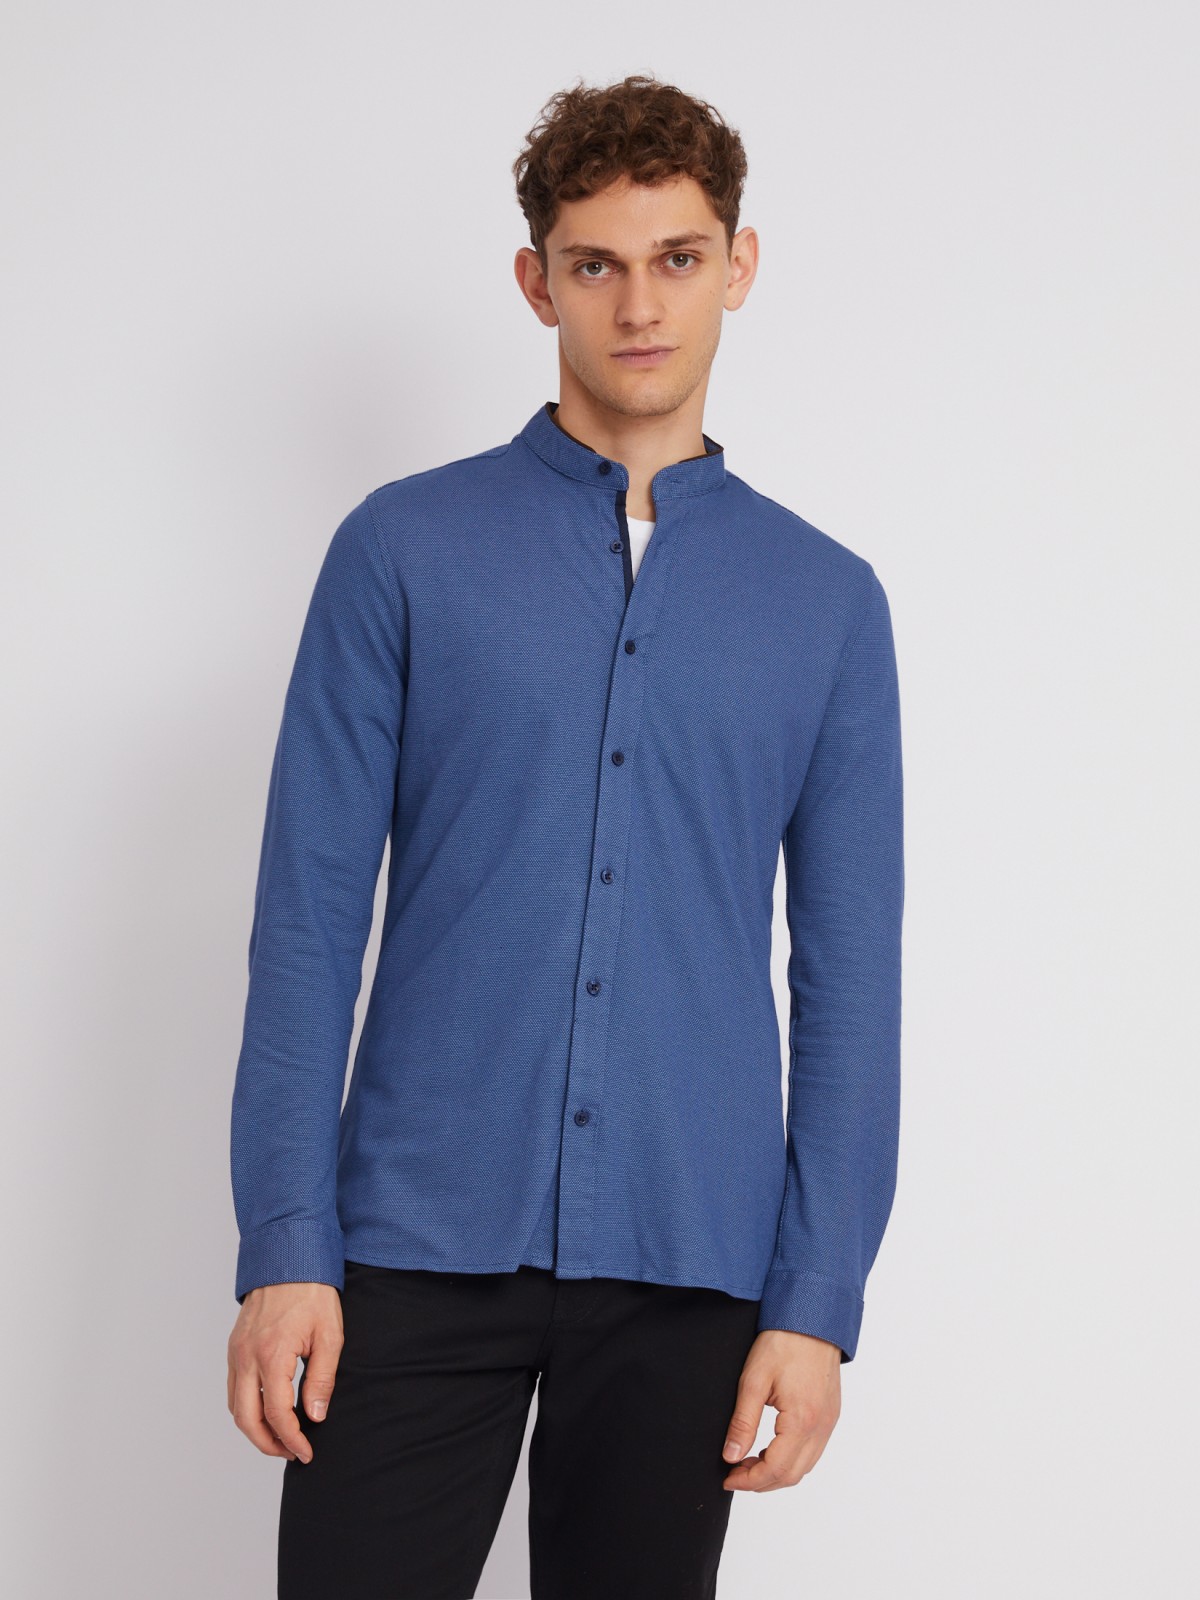 Офисная рубашка из хлопка с воротником-стойкой и длинным рукавом zolla 012322159071, цвет темно-синий, размер M - фото 5